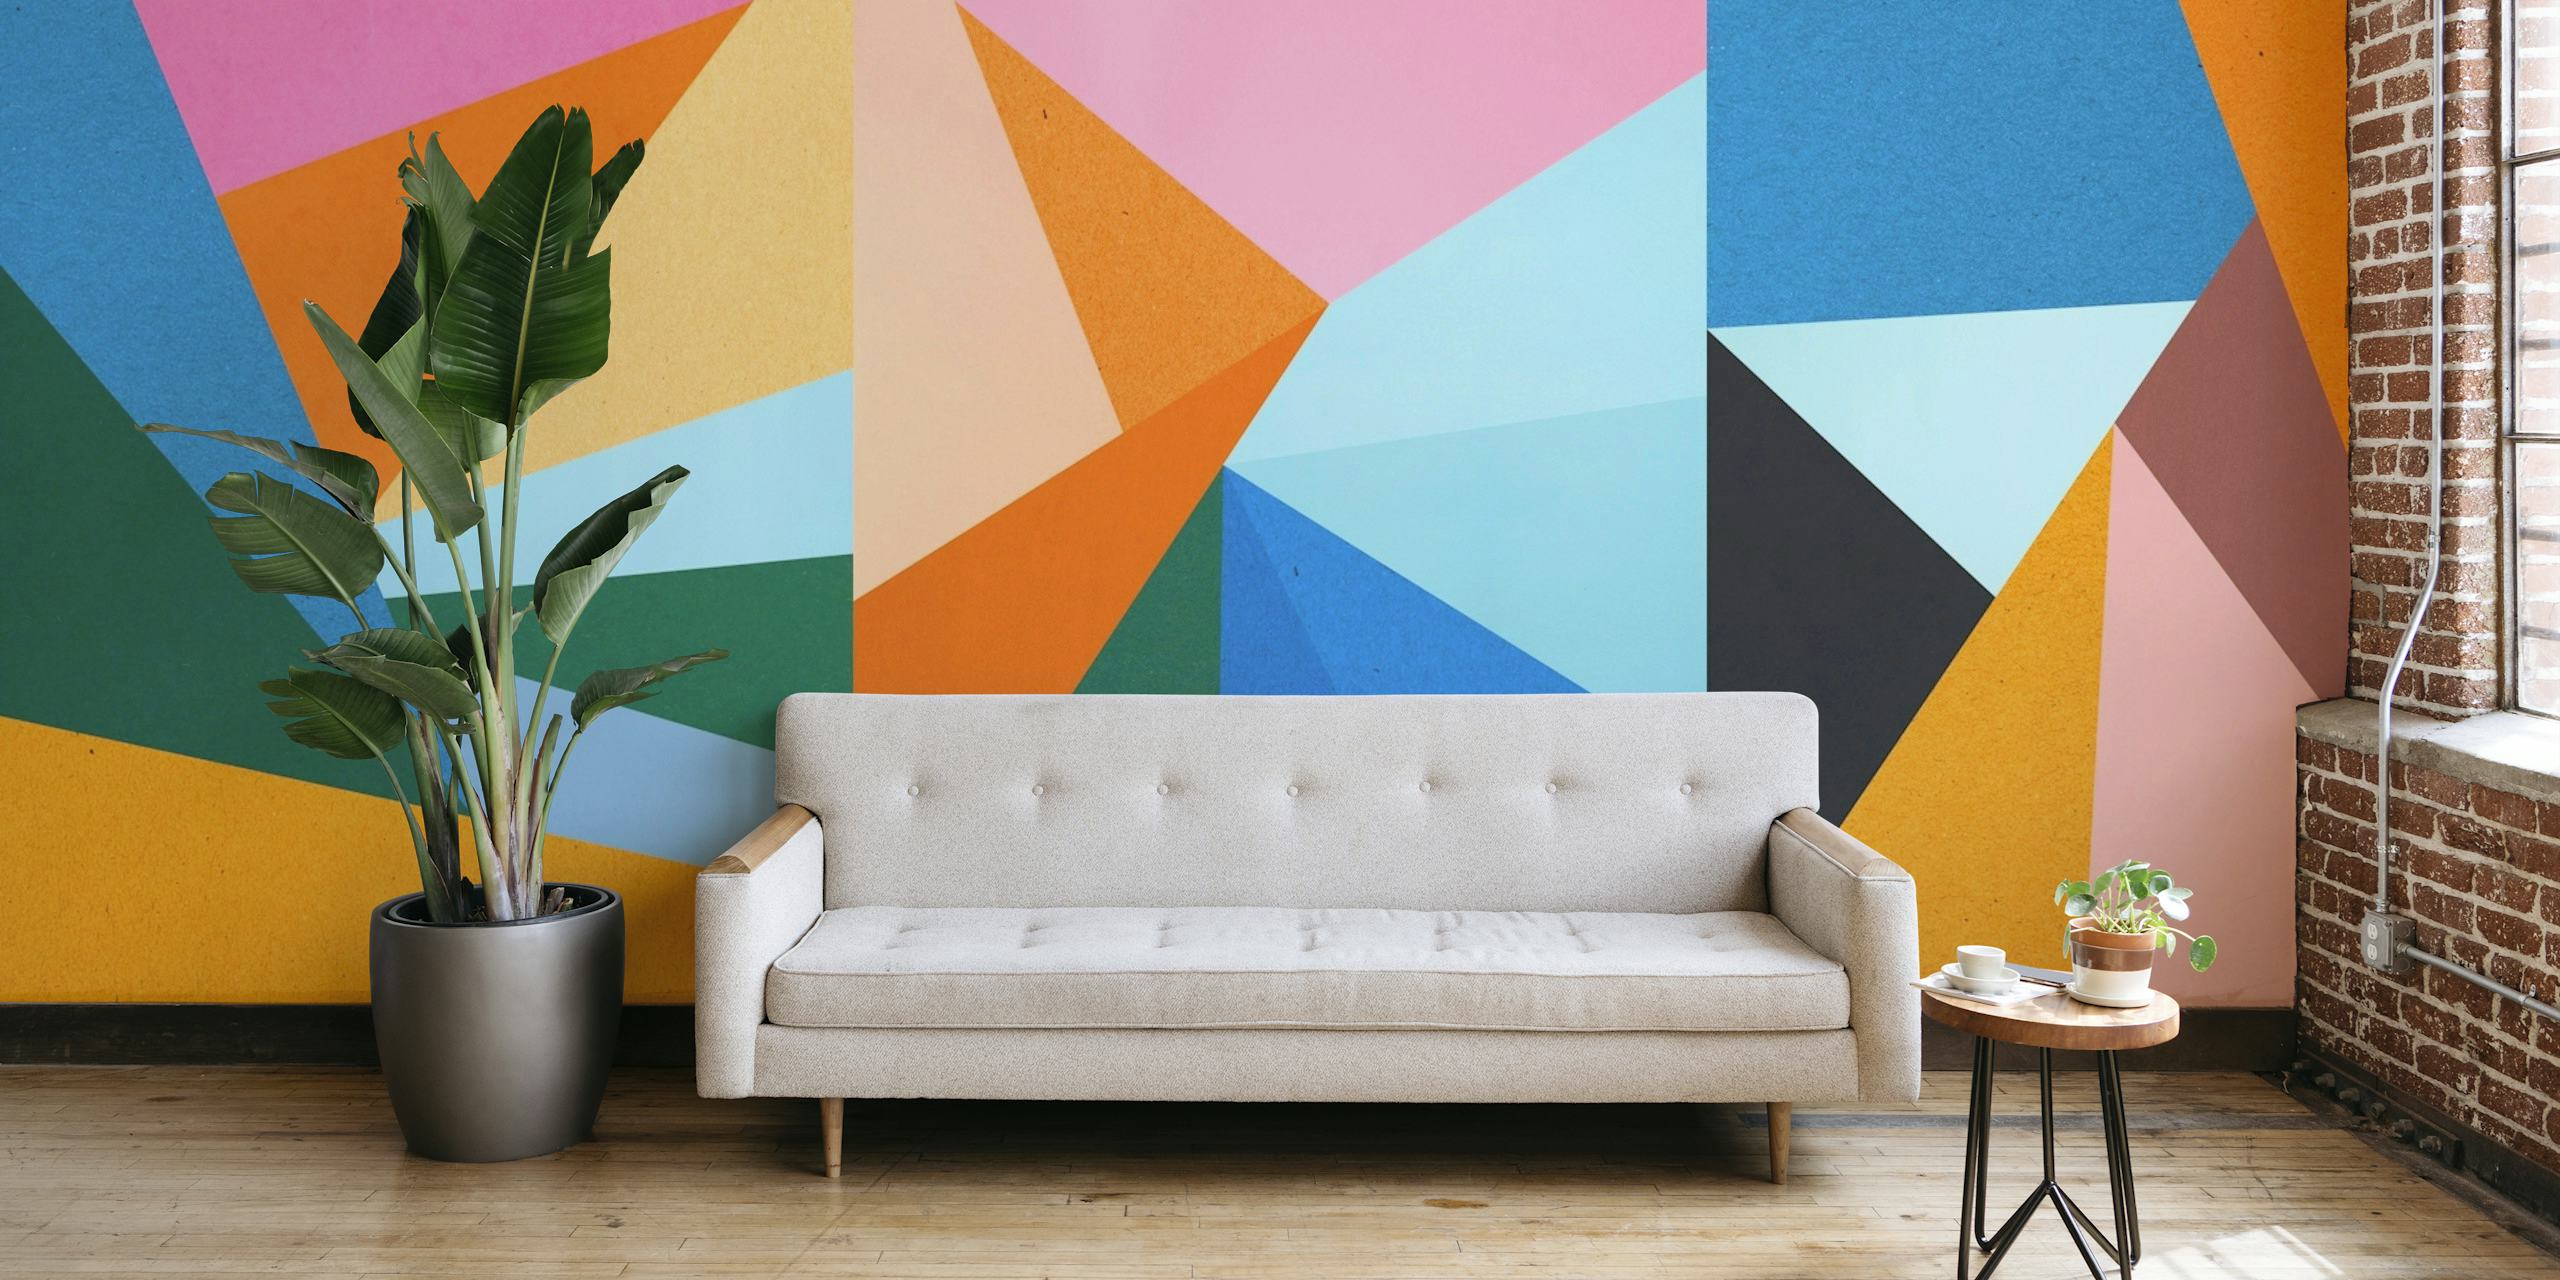 Mural de pared con motivos geométricos coloridos, formas dinámicas y una gama de colores